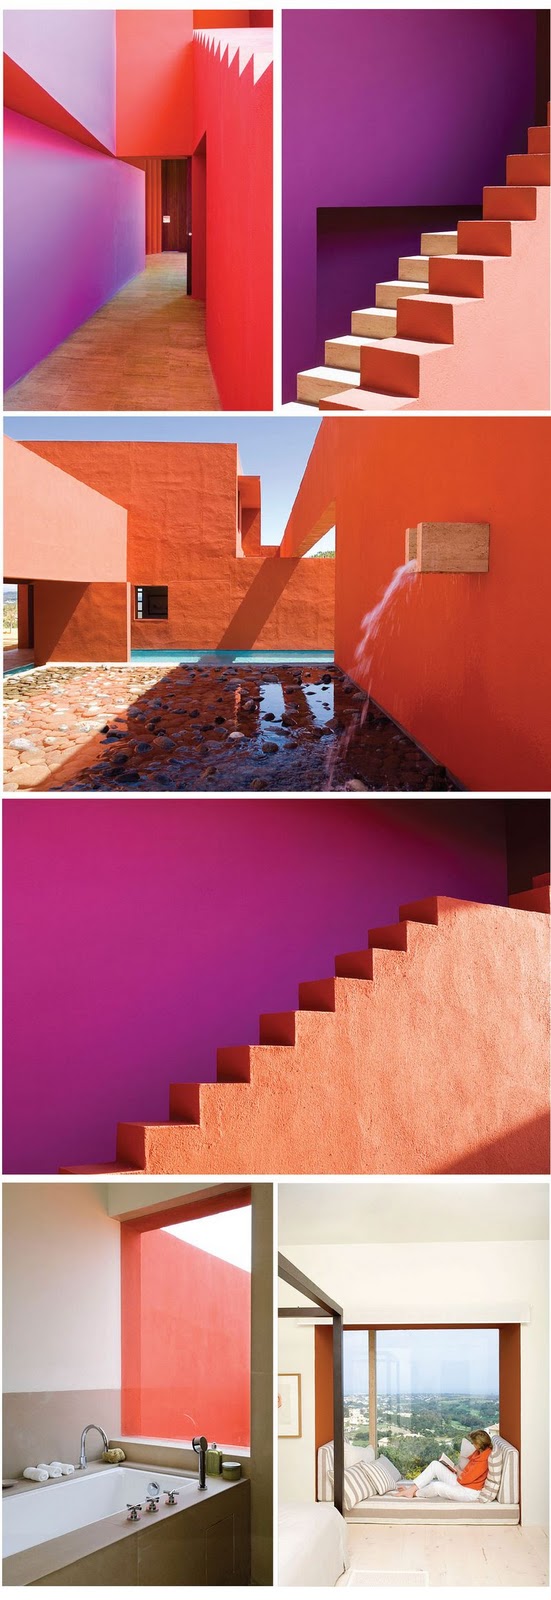 Yum.: Minimalist Mexican Architecture